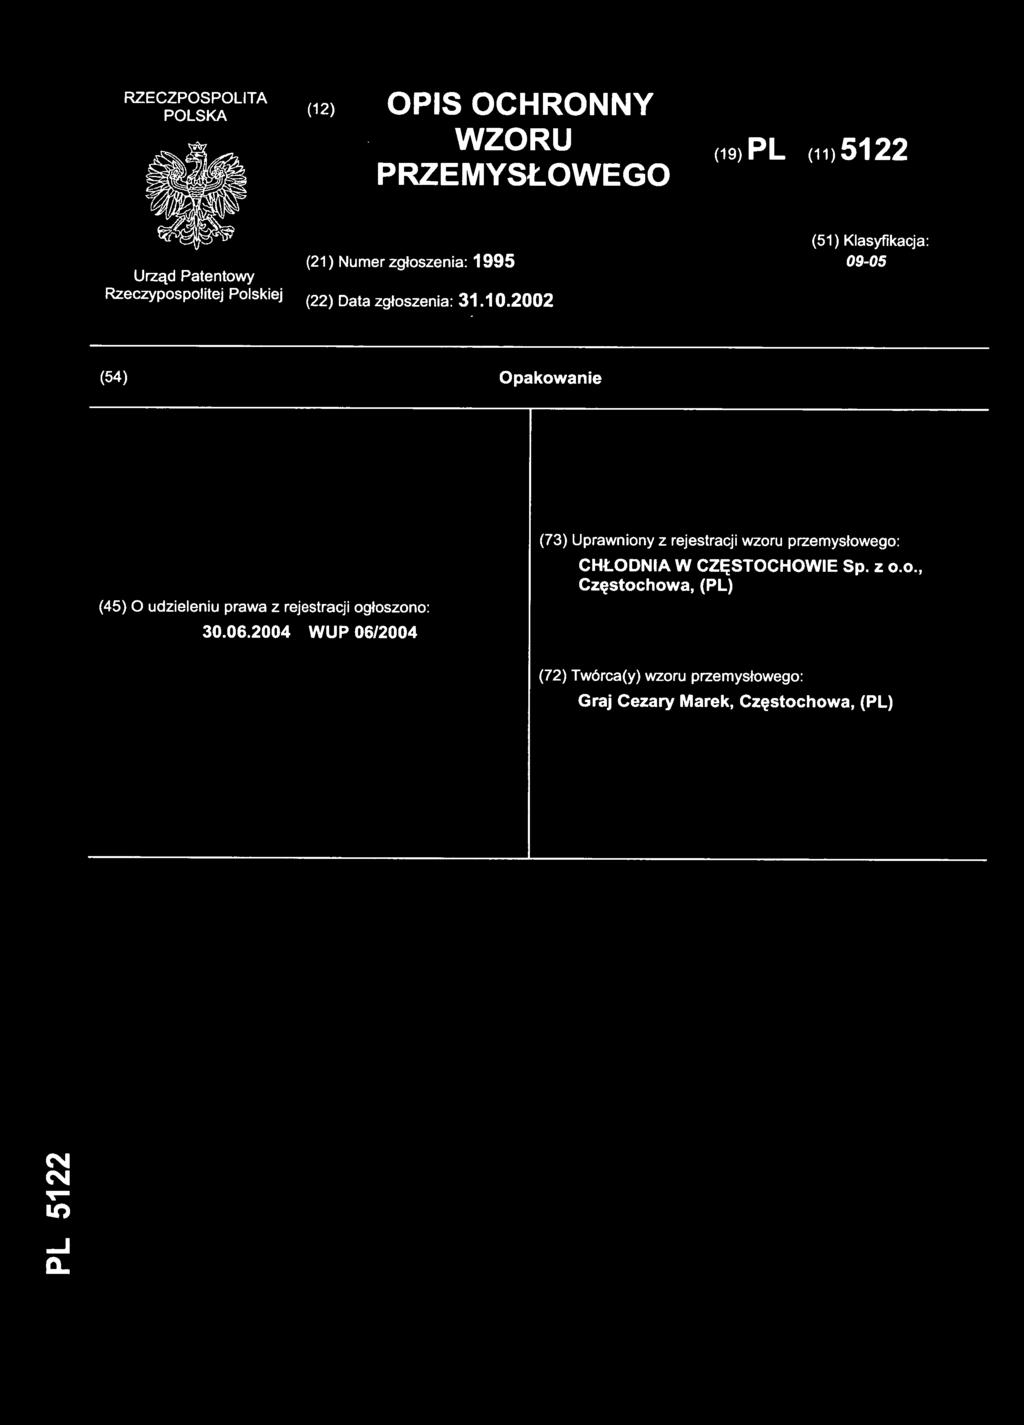 2002 (54) Opakowani e (45) O udzieleniu prawa z rejestracji ogłoszono: 30.06.